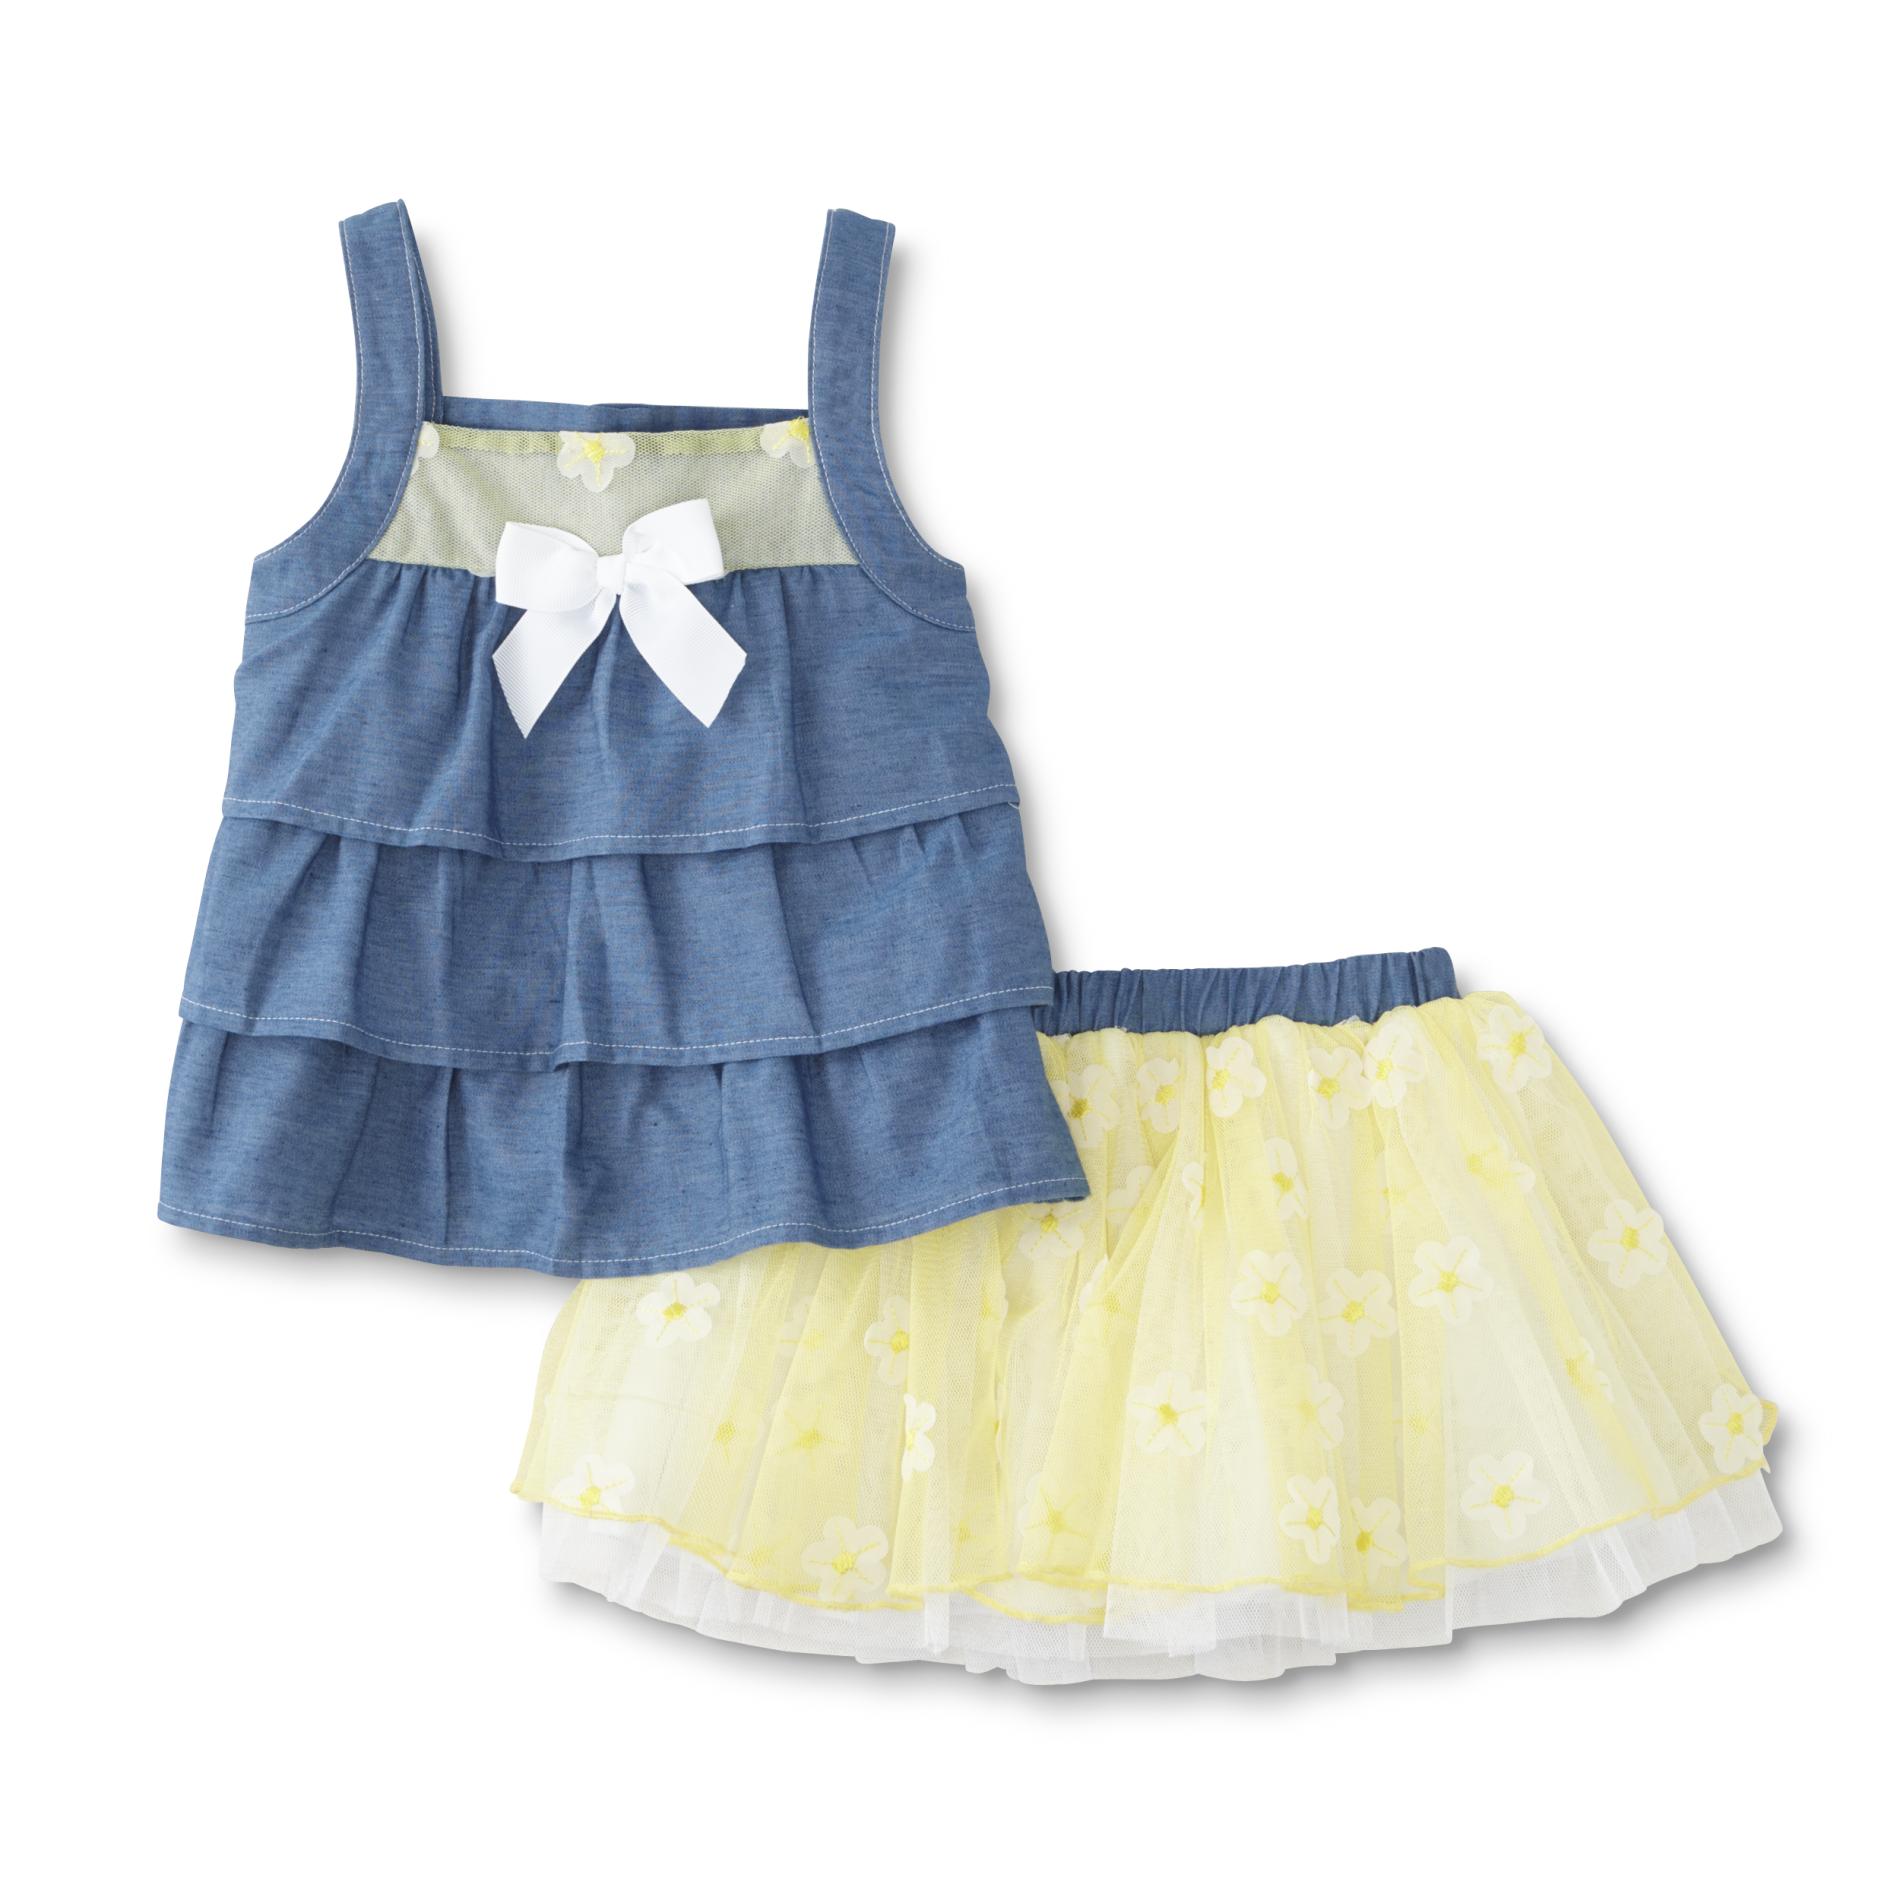 Infant & Toddler Girl's Sleeveless Top & Scooter Skirt